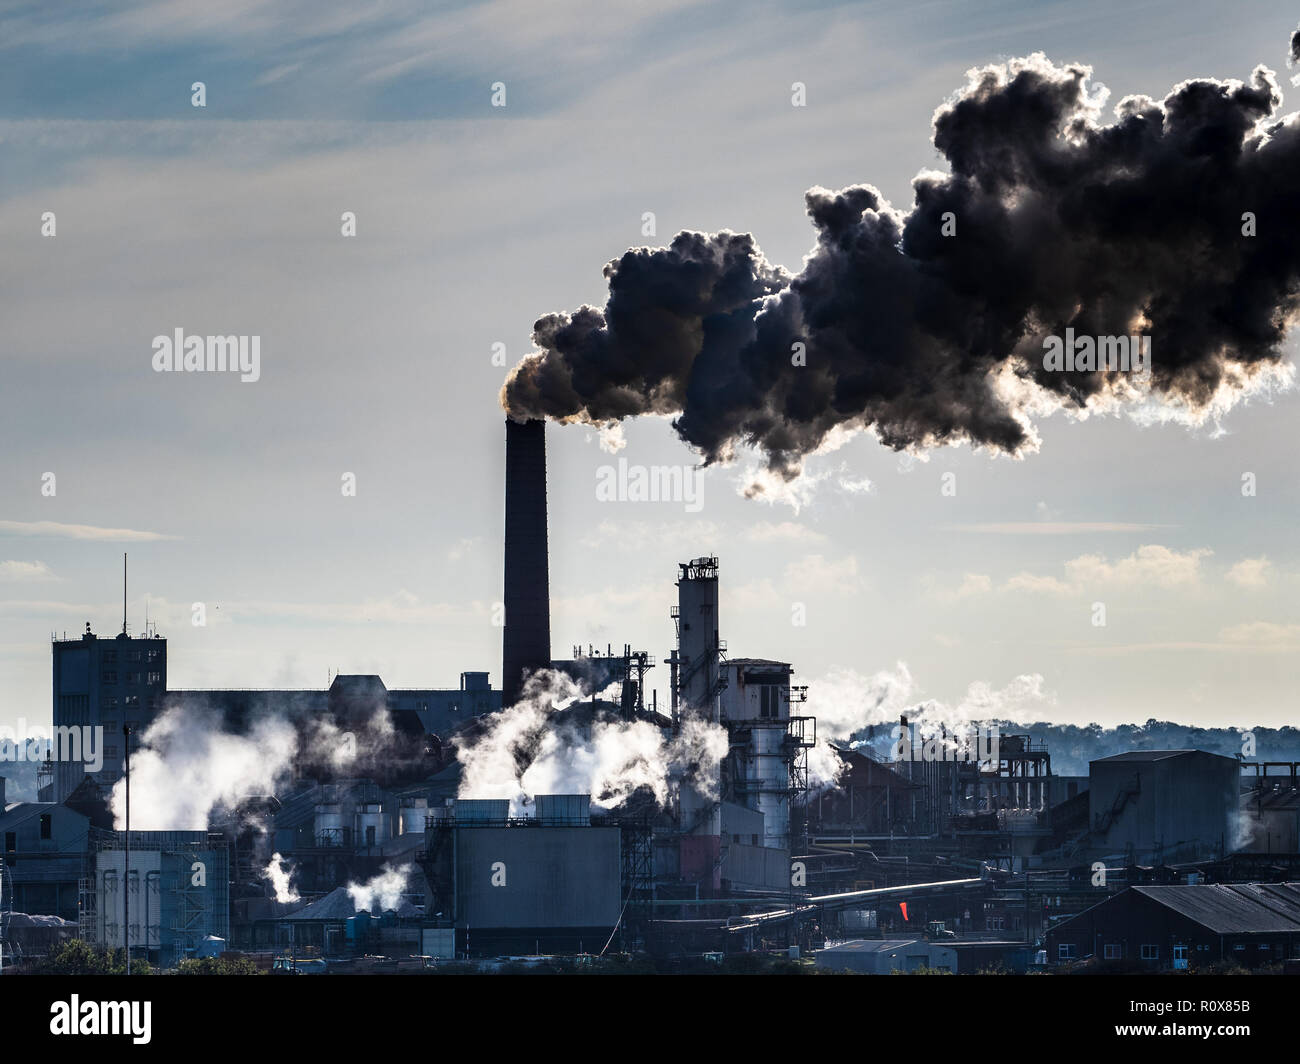 Émissions de l'usine - cheminées de l'usine de betteraves à sucre - la fumée et la vapeur rétroéclairées proviennent de l'usine britannique de sucre de Bury St Edmunds Suffolk Royaume-Uni Banque D'Images